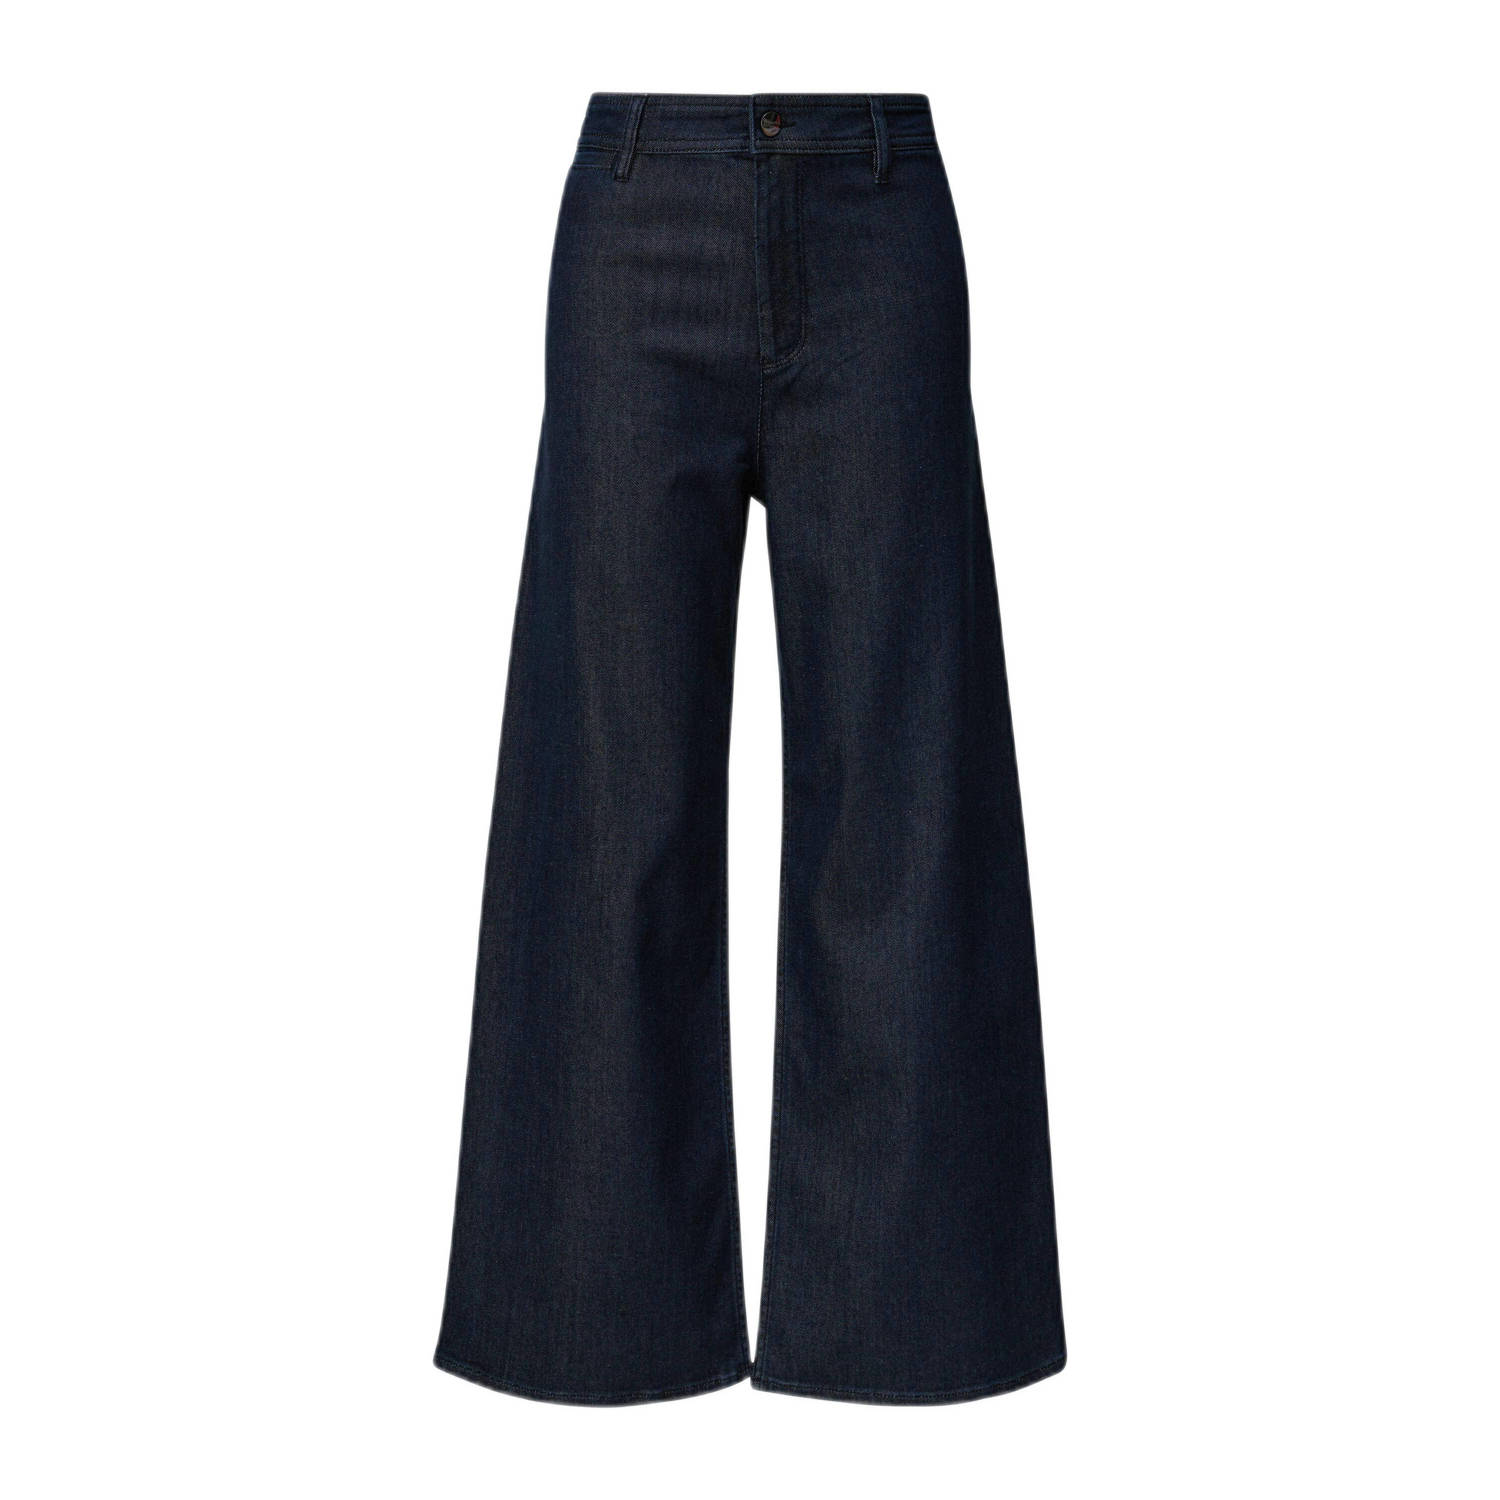 Comma high waist wide leg jeans dark blue